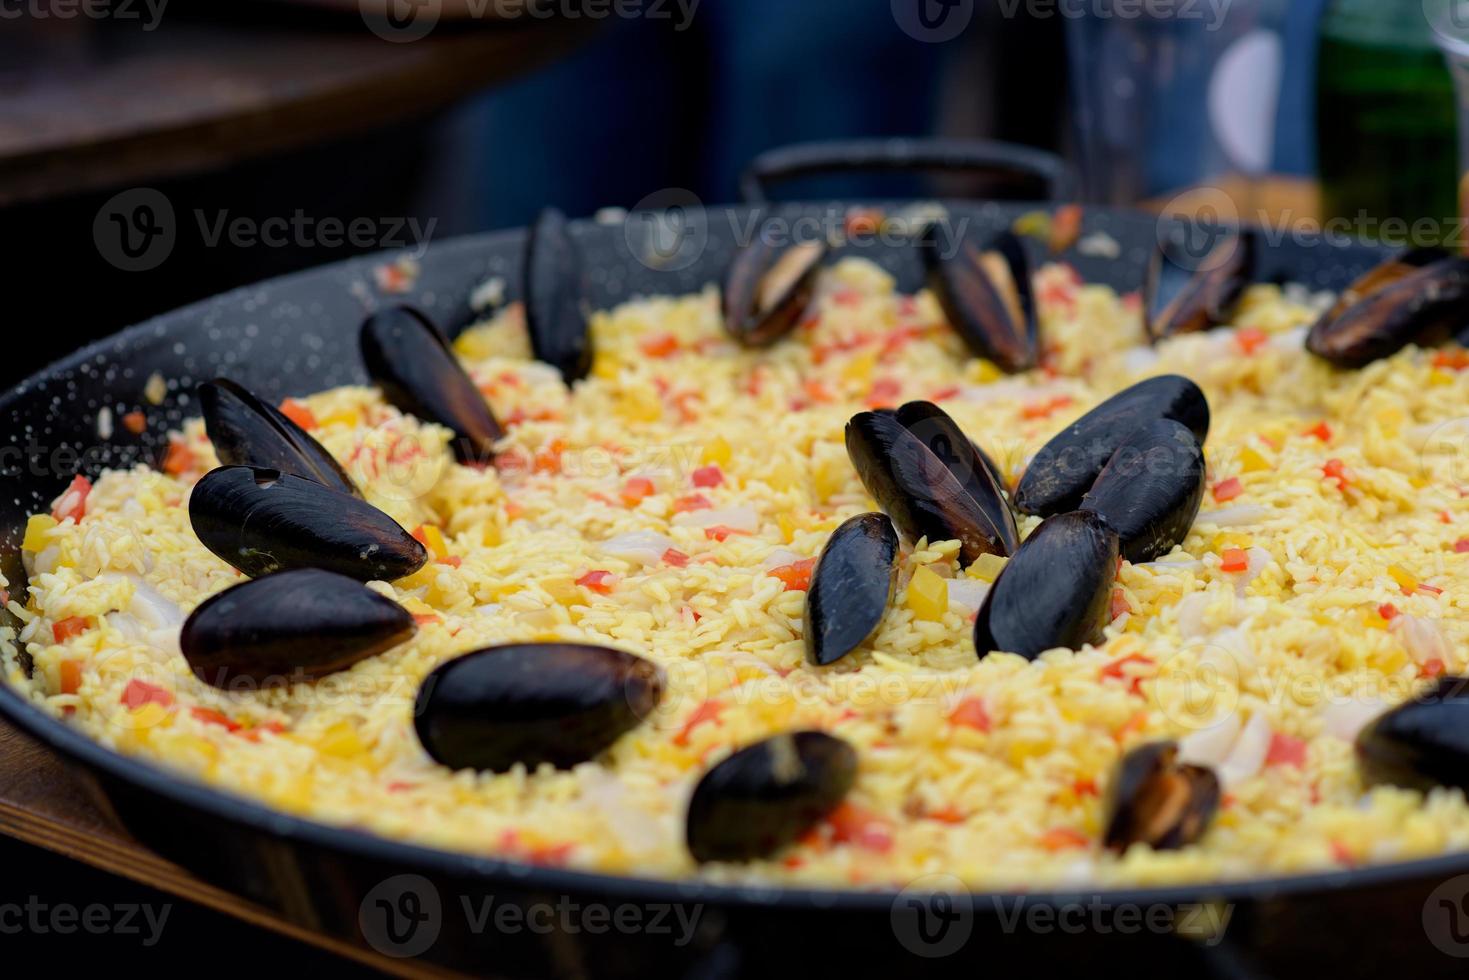 paella spagnola preparata nel ristorante di strada foto